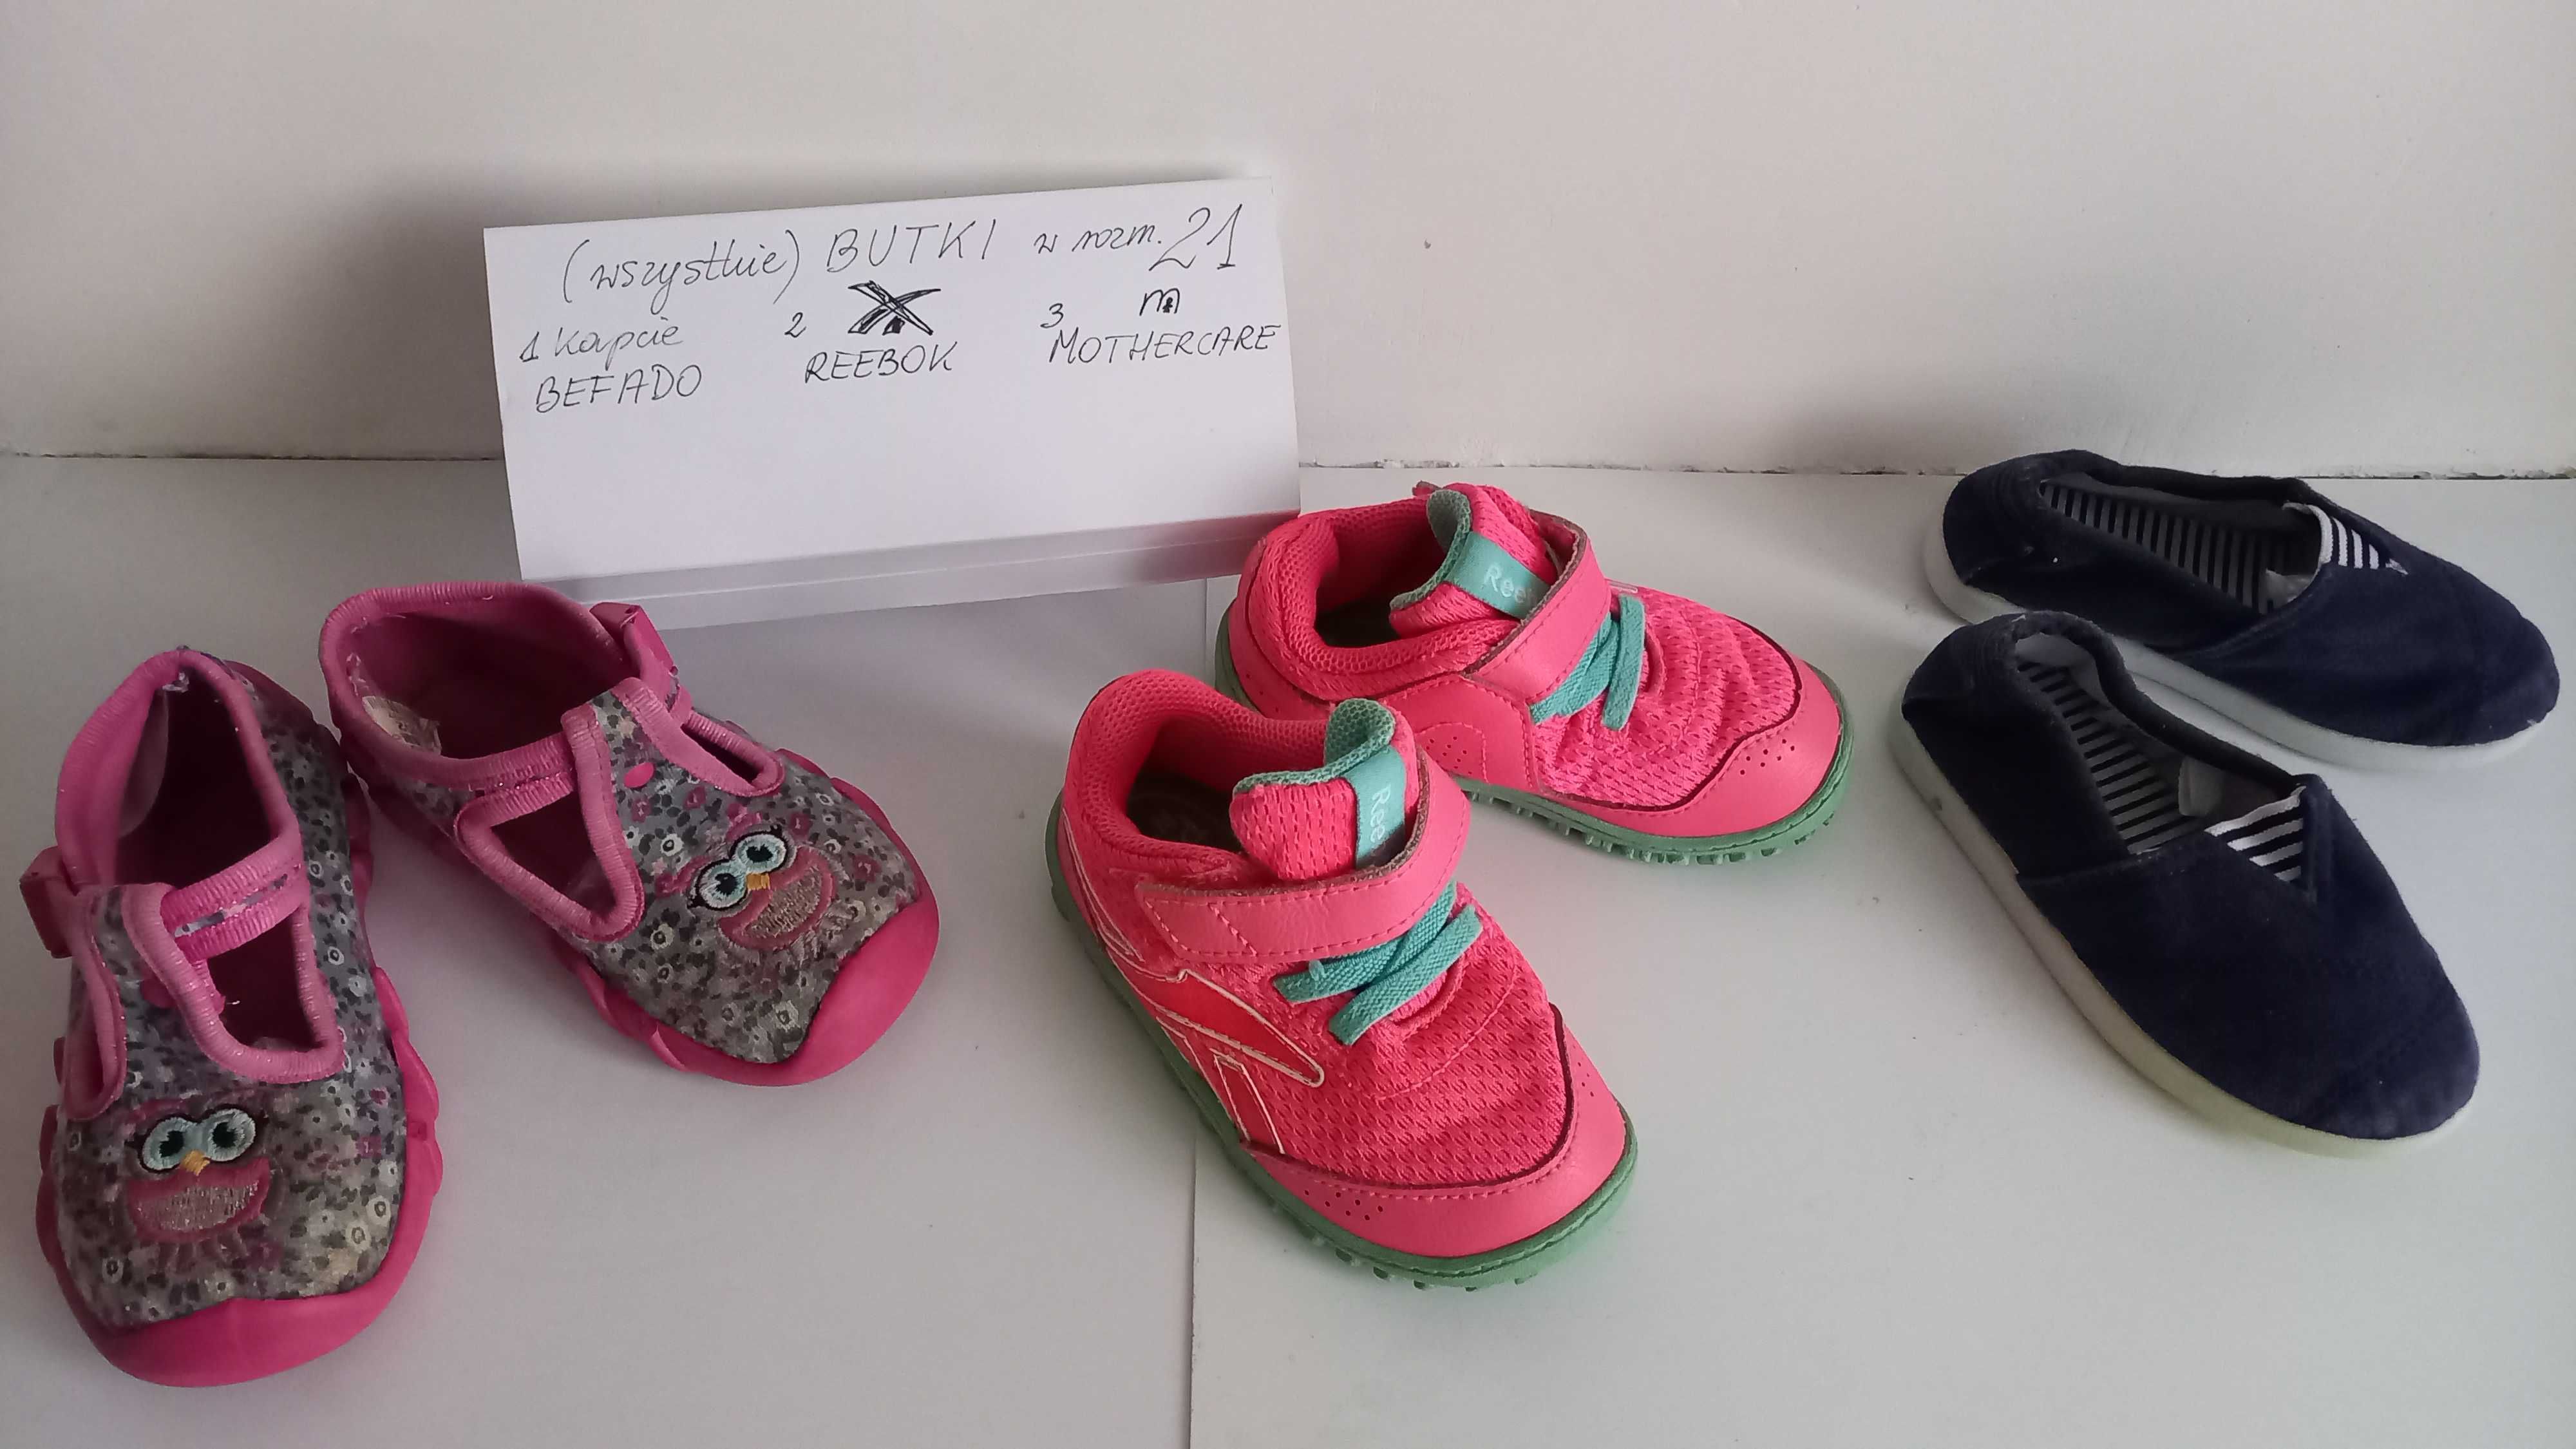 Buty dziecięce Reebok, Befado, Mothercare, rozmiar 21